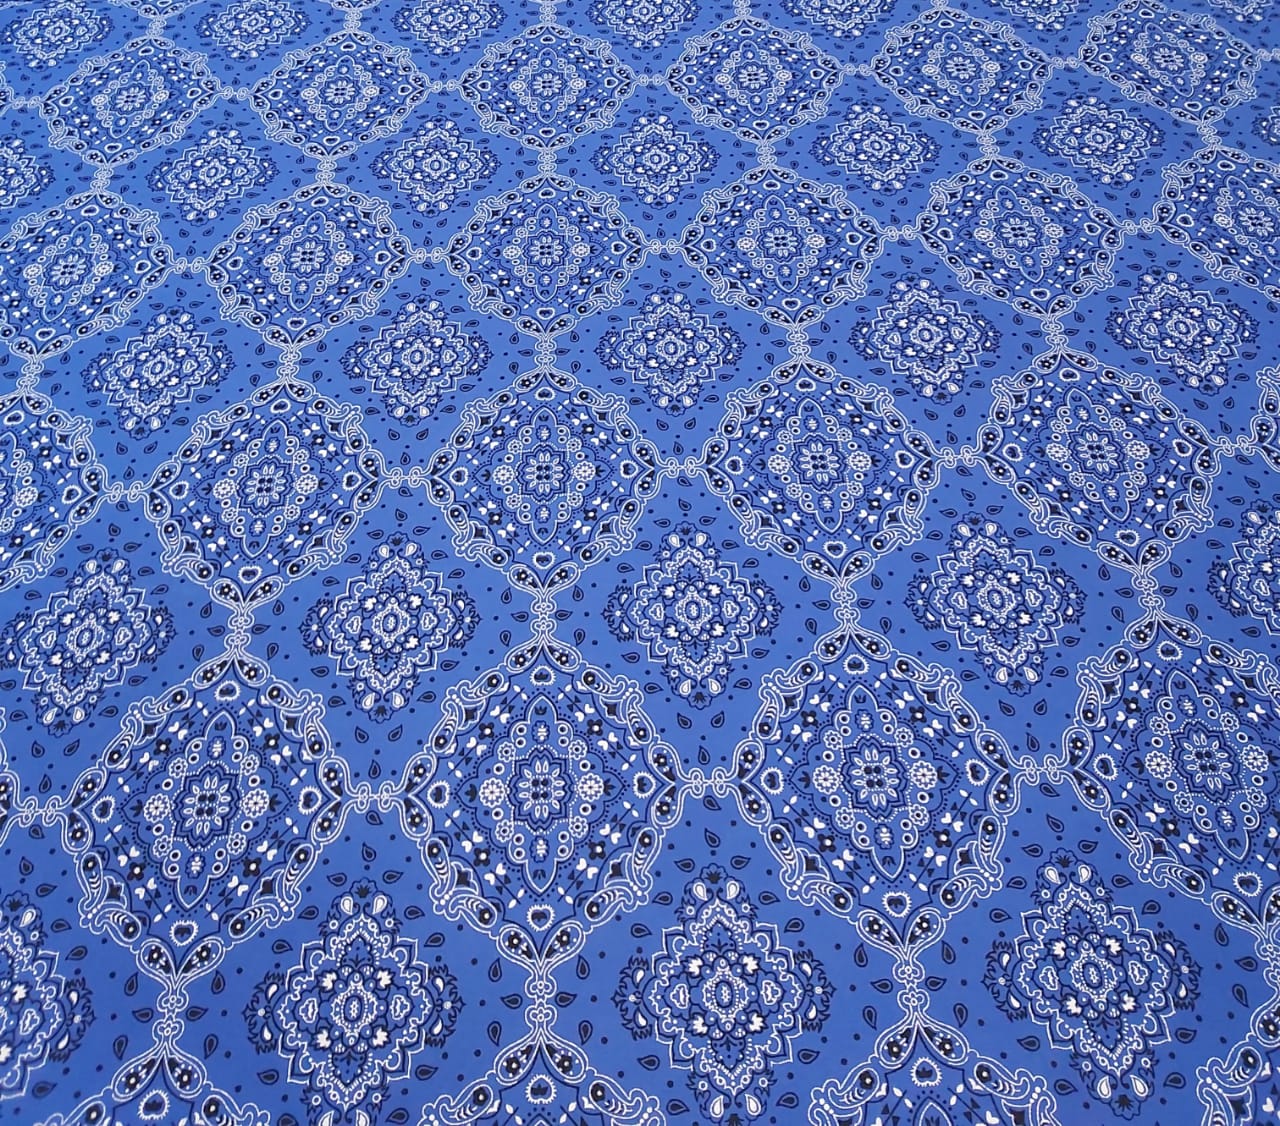 Tricoline Estampada Bandana Azul Royal 100% Algodão - Largura 1,50 m x Comprimento 2 m 